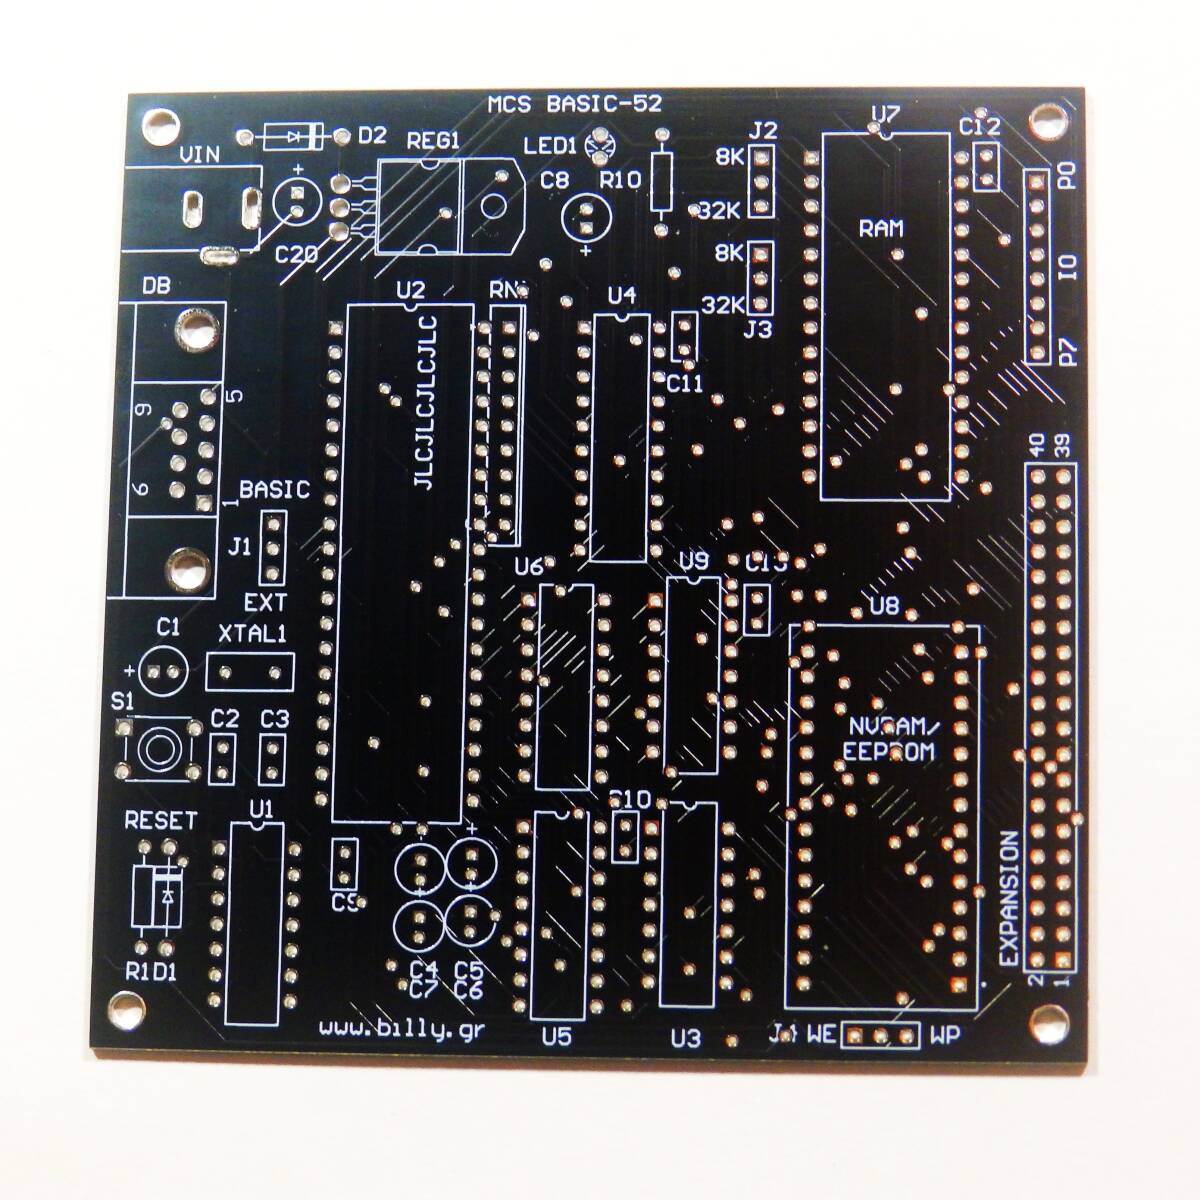 MCS 52 Basic 基板 黒色 Atmel 89C52 マイコン 8052 CPU PCB ボード 8051 eatyaの画像1